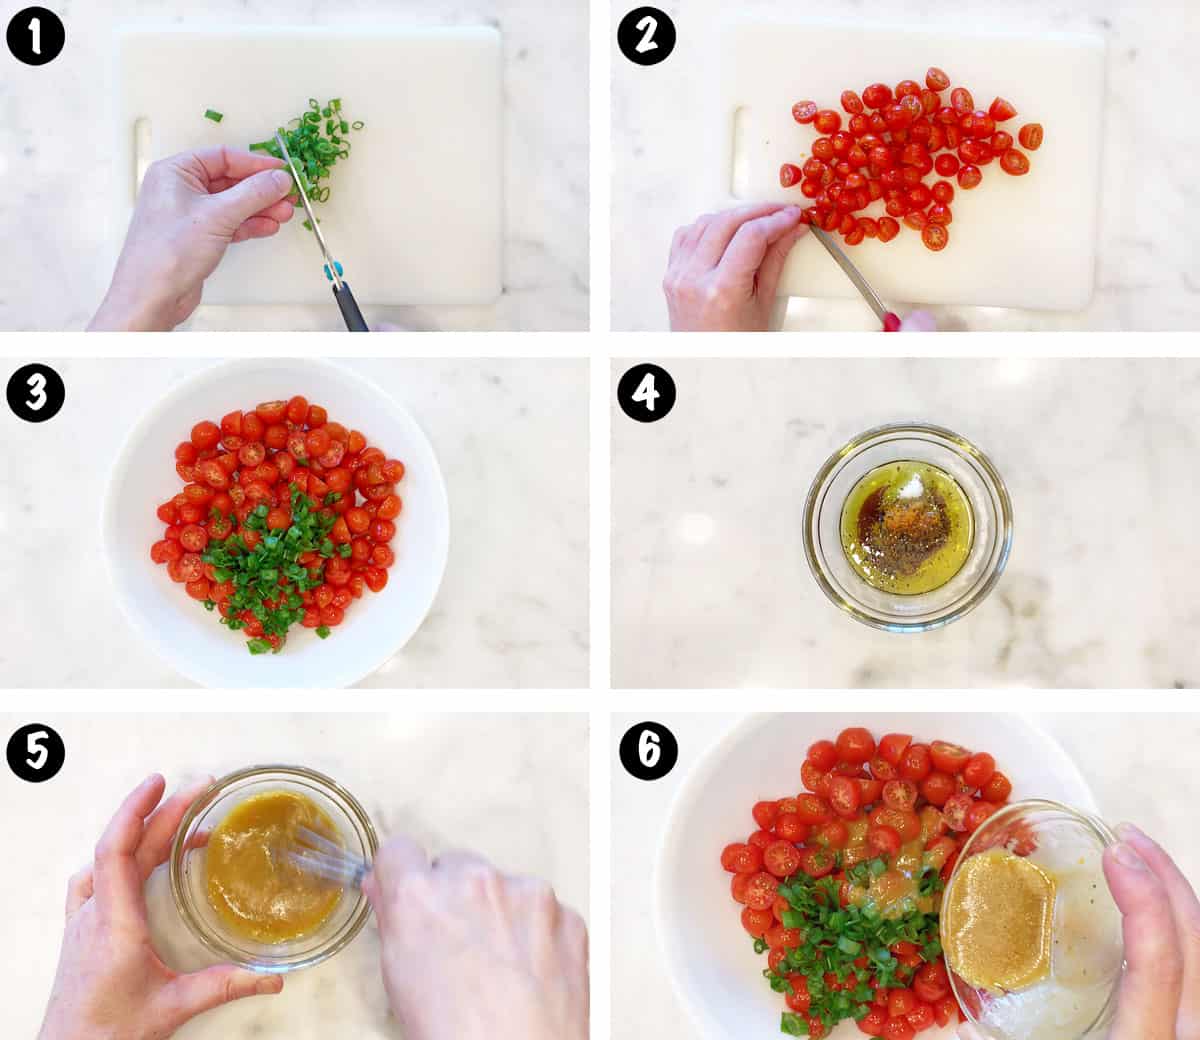 Un collage de fotos que muestra los pasos para hacer una ensalada de tomate. 